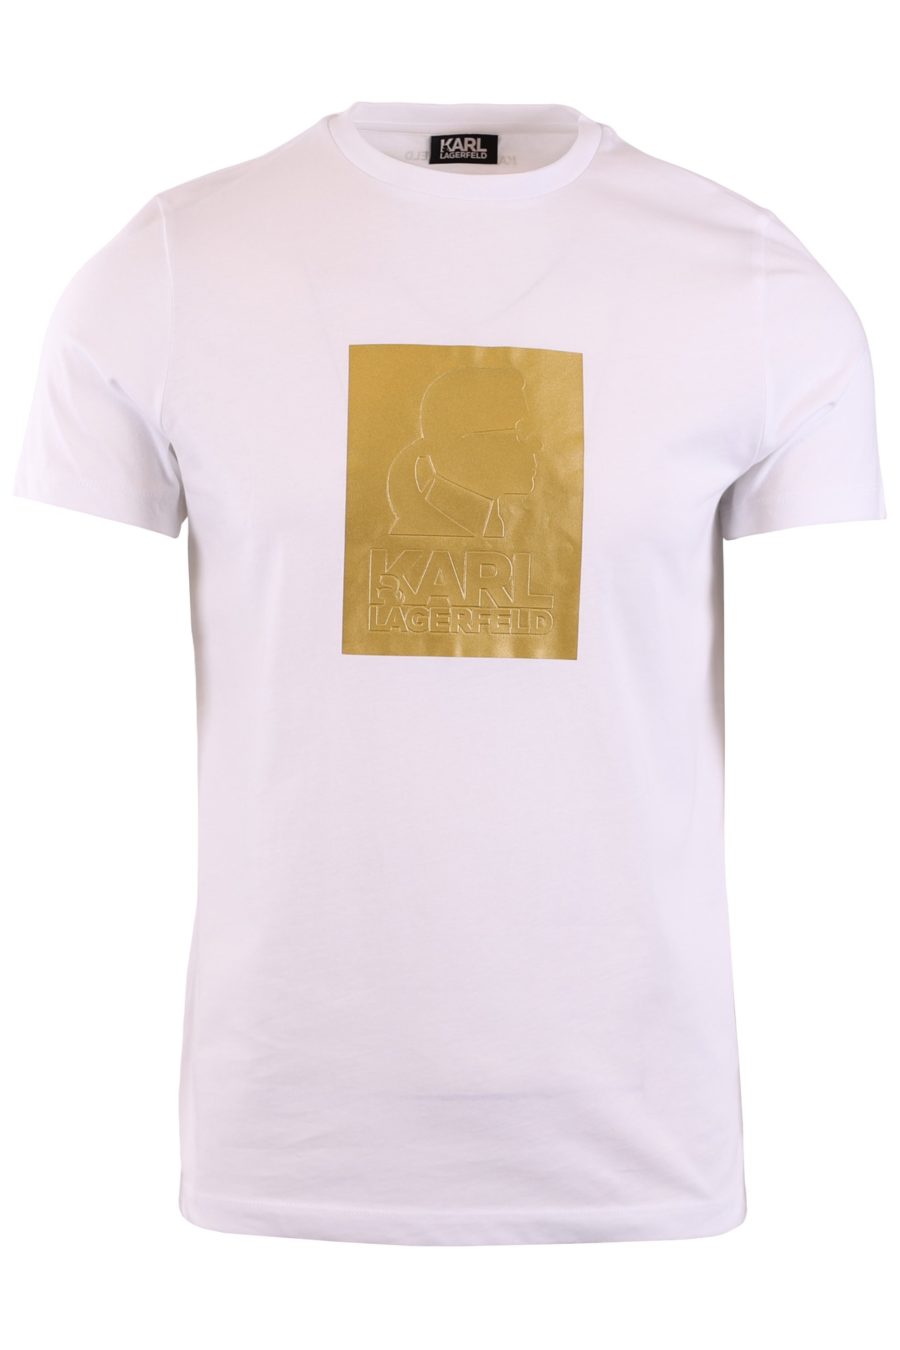 T-shirt branca com estampado dourado "Karl" - b4c0b4e78ead2e519532907d000289816327dc34